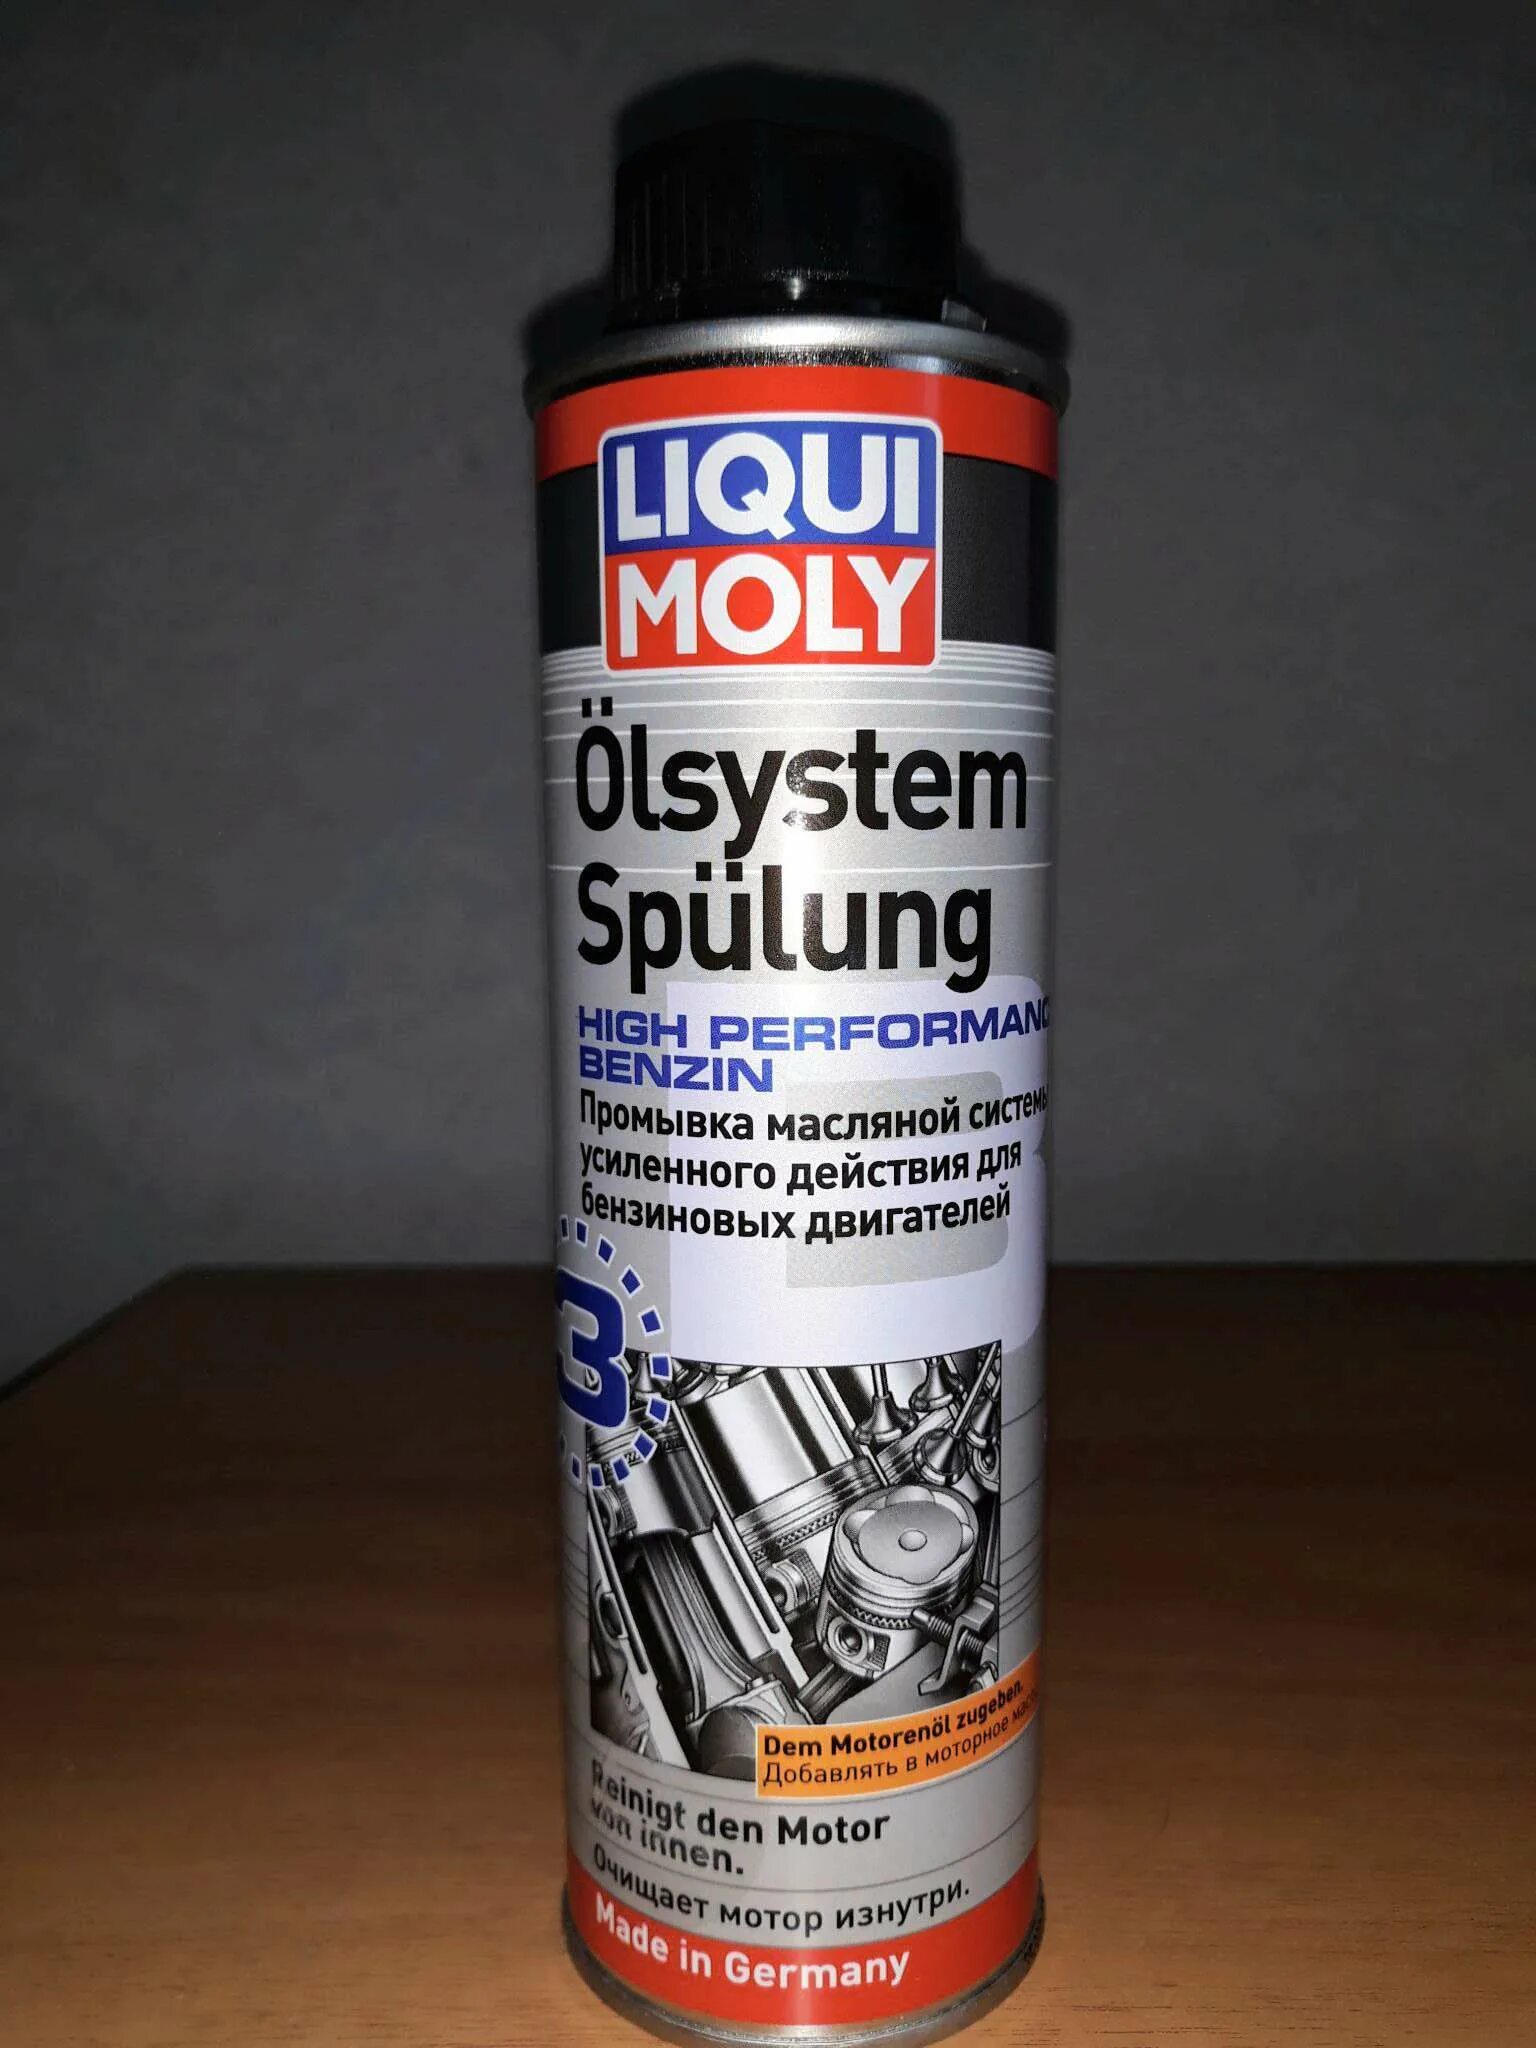 Масляные промывки. Очиститель масляной системы Ликви Молли. Liqui Moly Oilsystem Spulung. 7590 Liqui Moly. Промывка двигателя "Liqui Moly" Oilsystem Spulung High Performance benzin (300 мл).